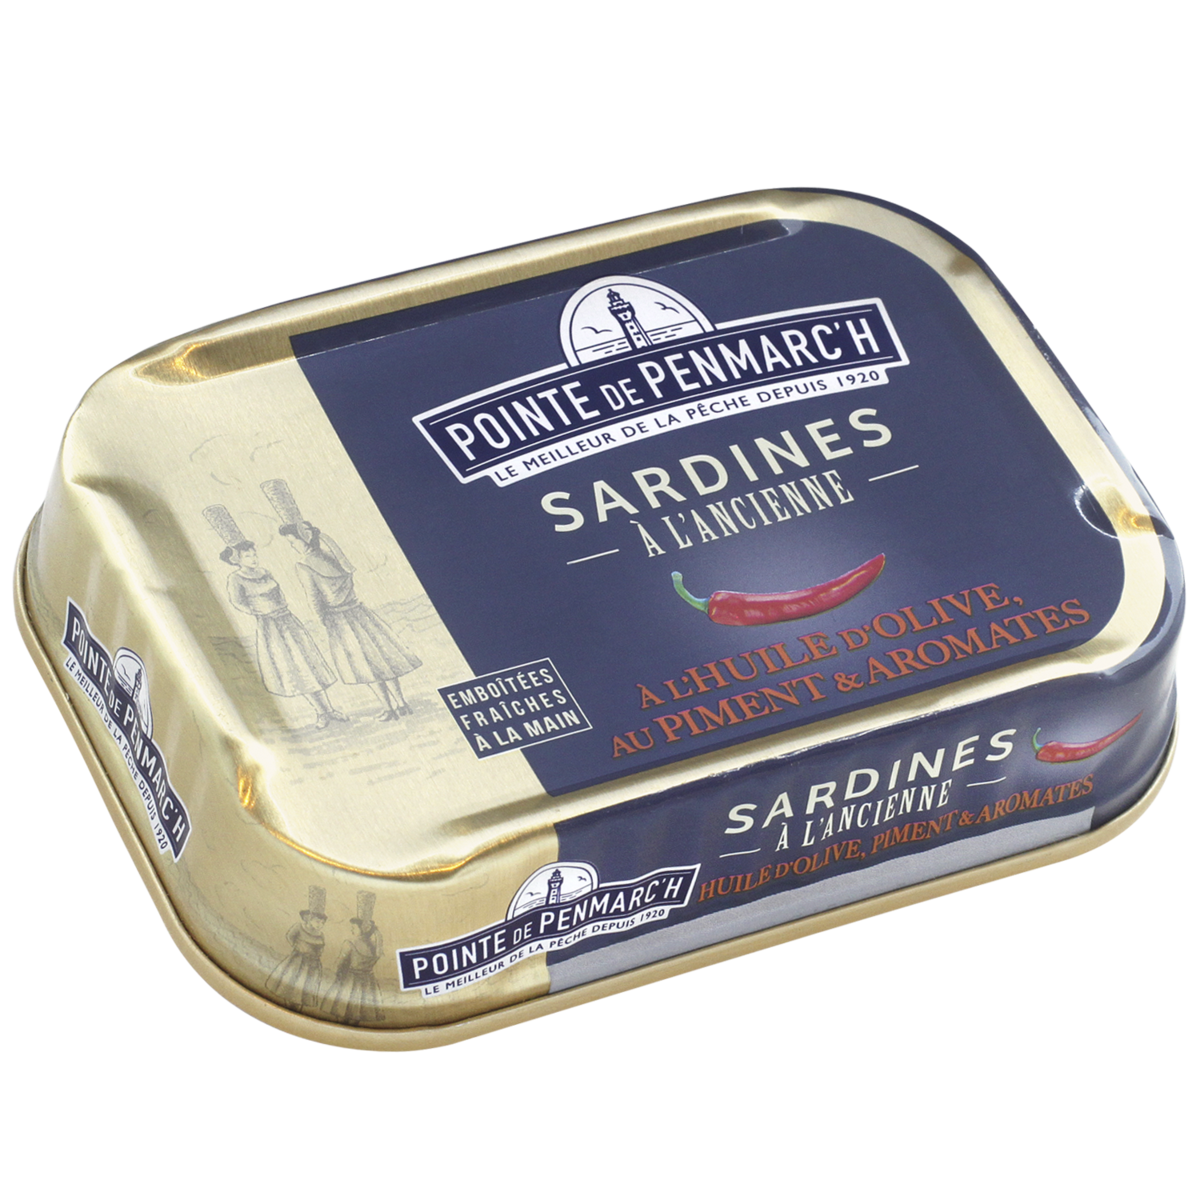 sardines-a-lancienne-a-lhuile-dolive-au-piment-et-aromates